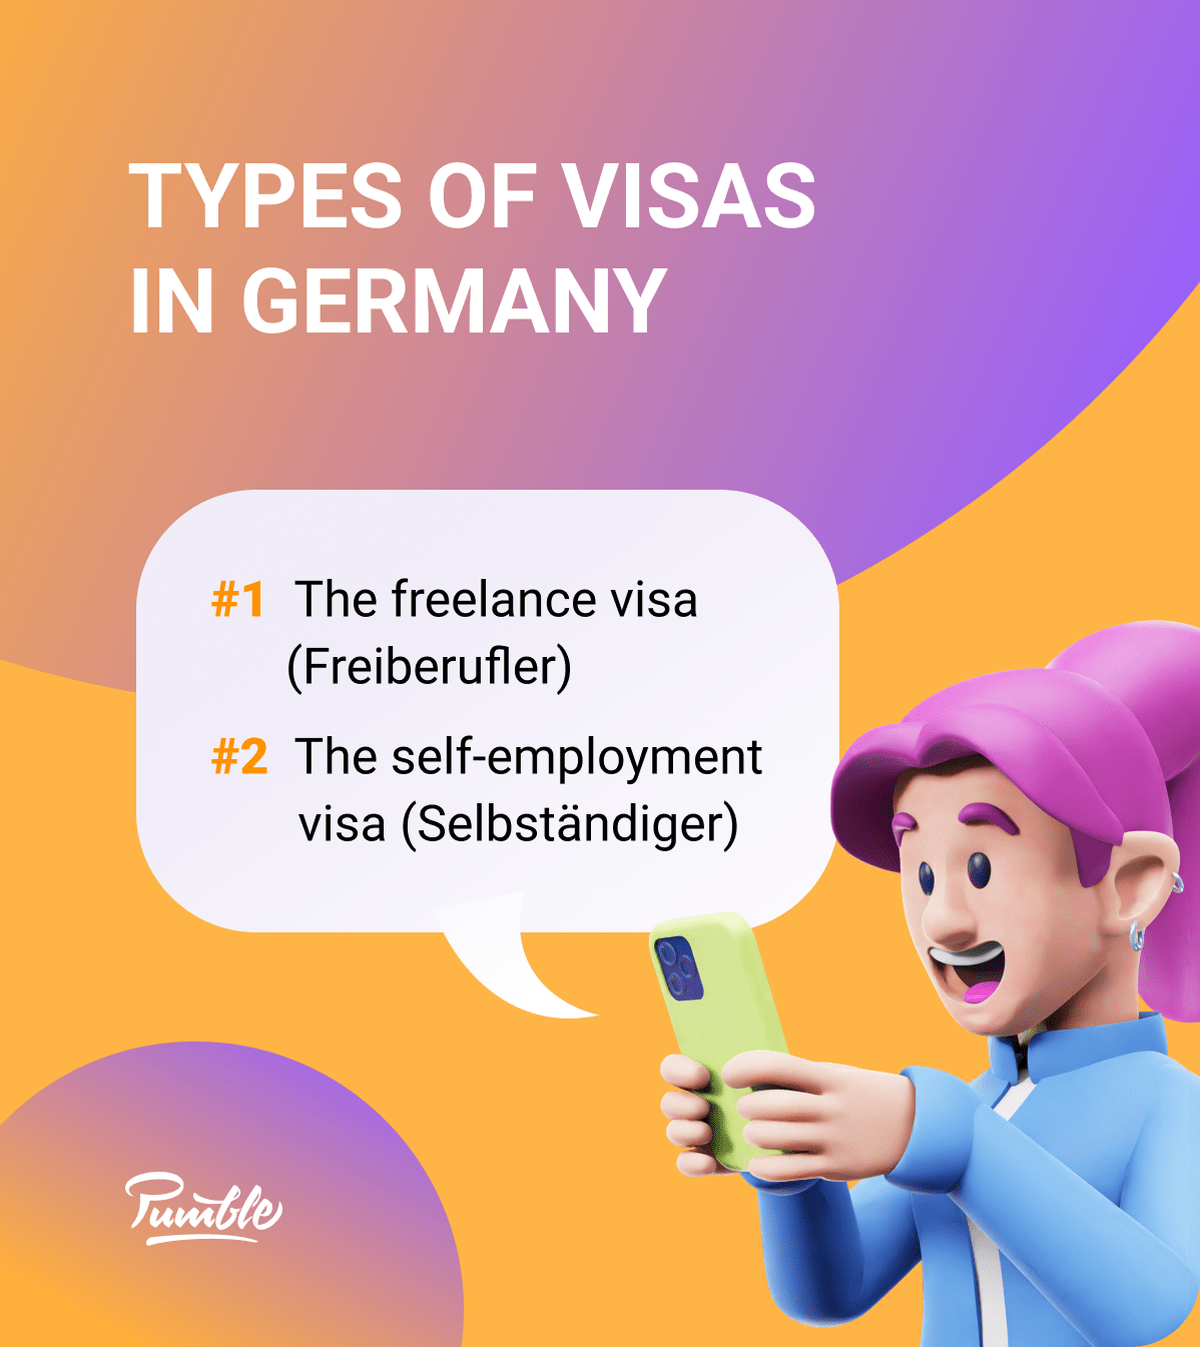 Types of visas in Germany